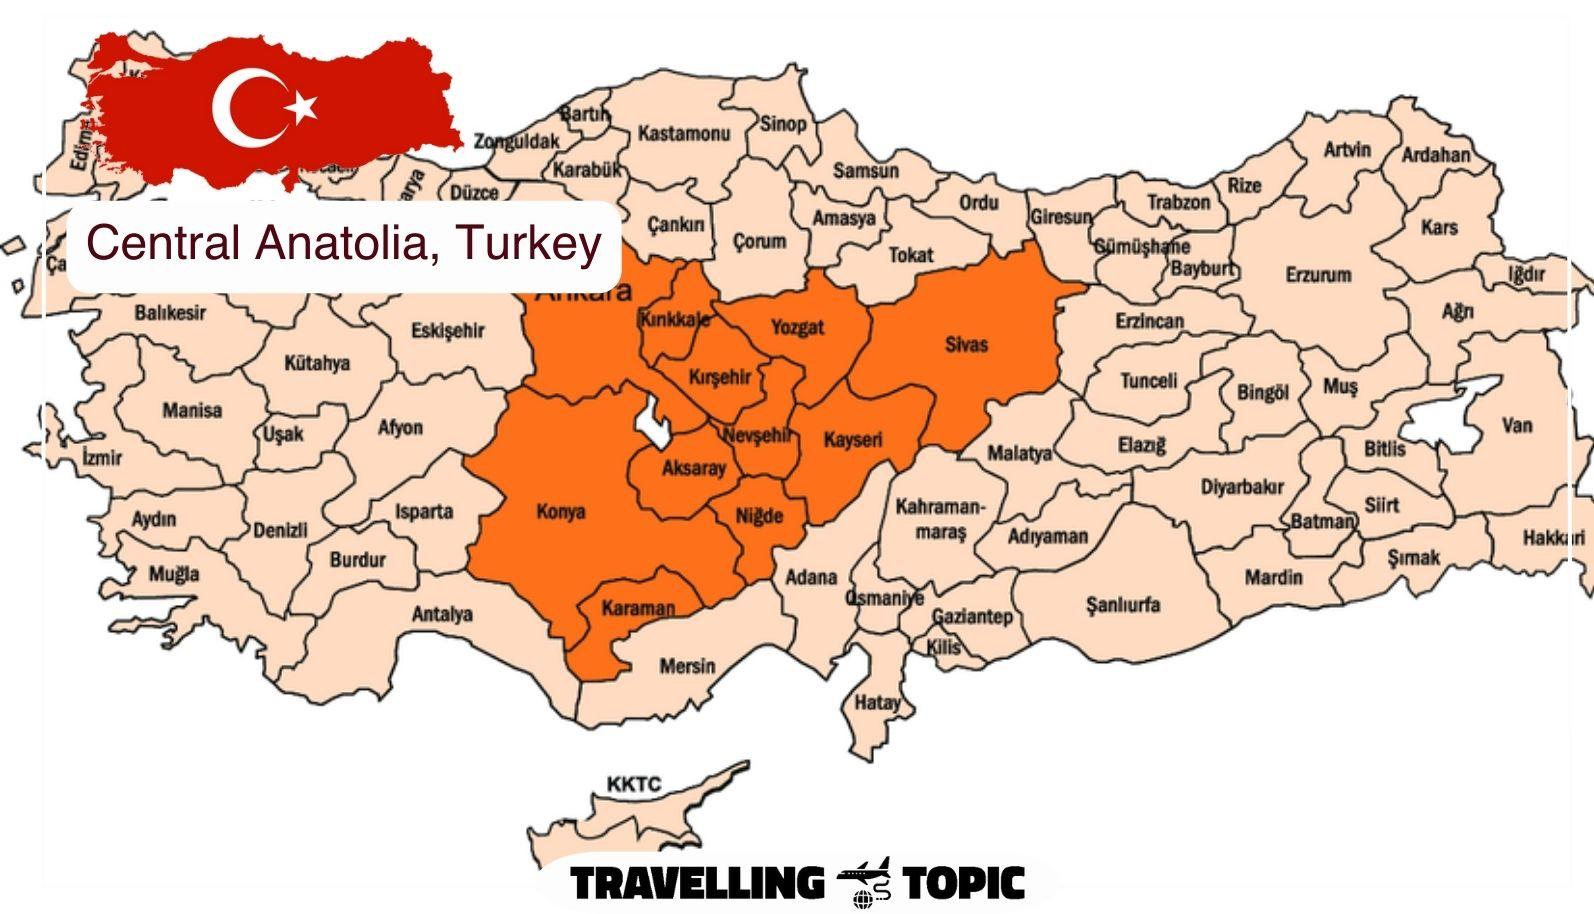 Central Anatolia, Turkey